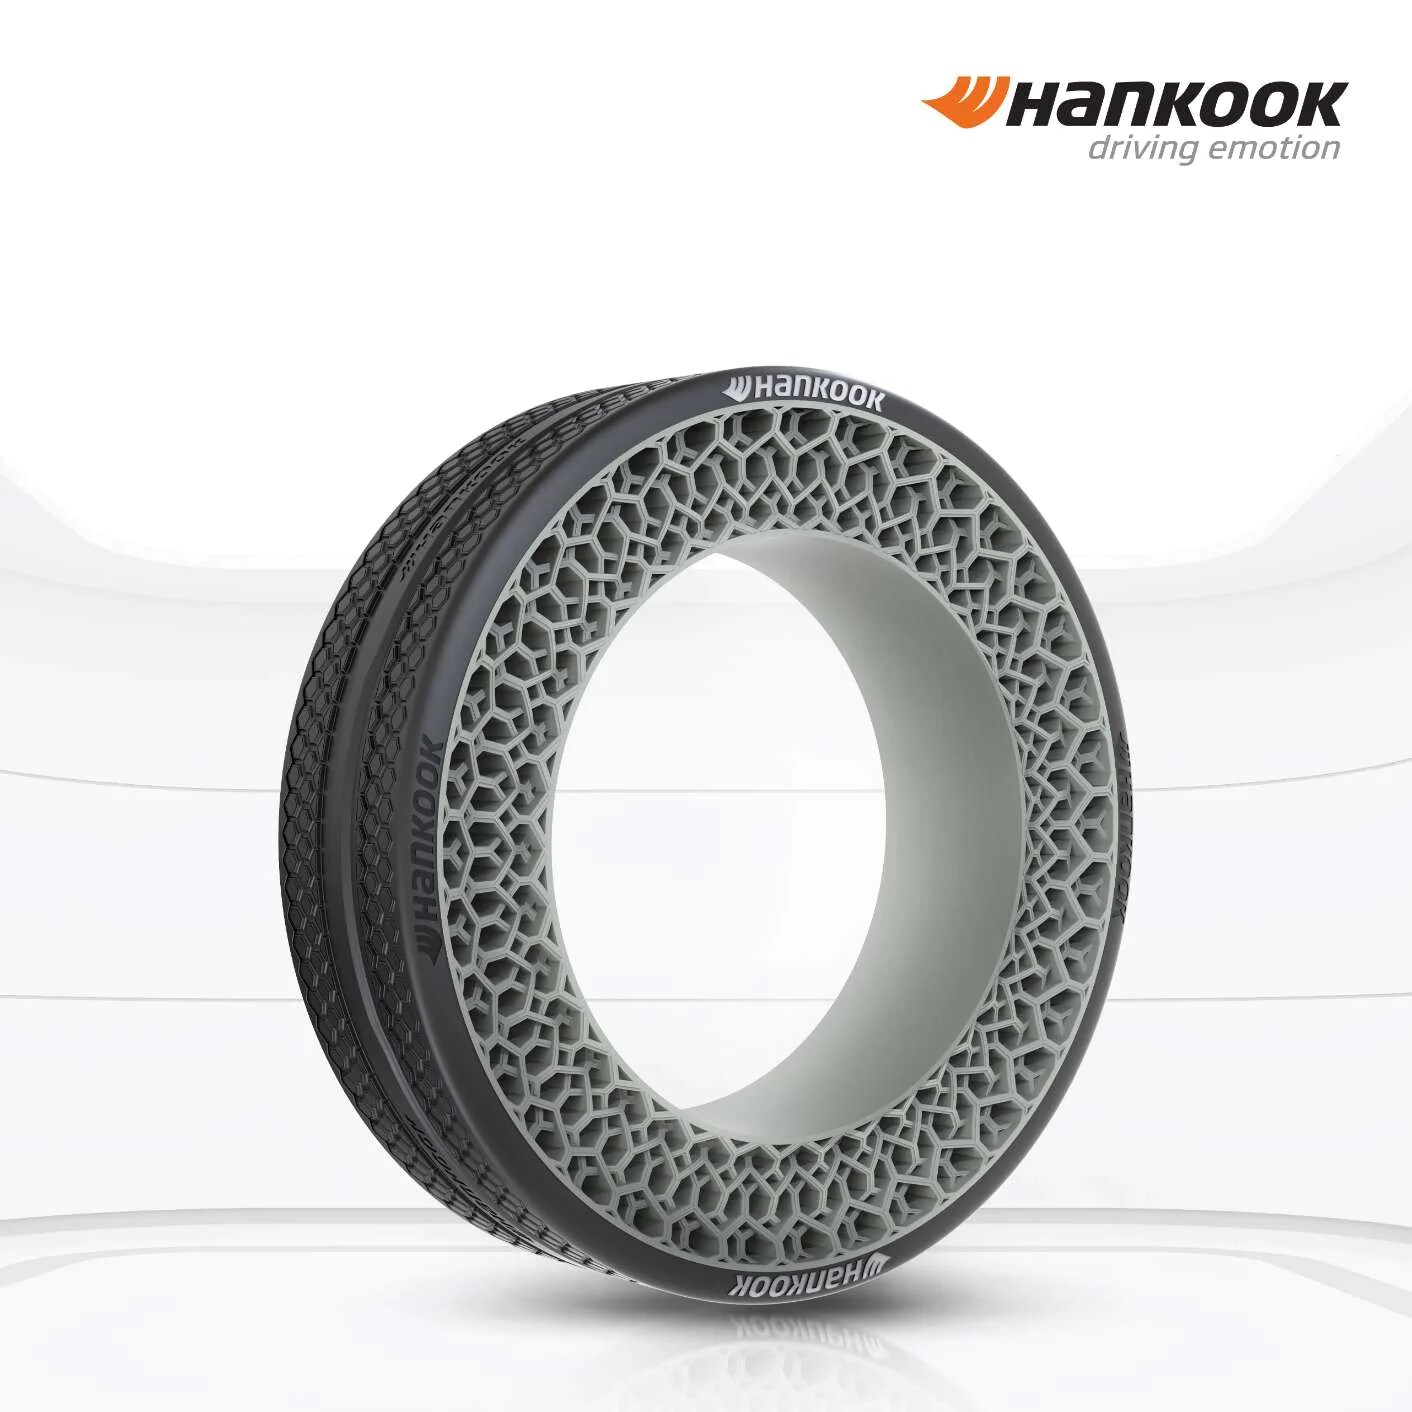 Hankook présente son concept de pneumatique futuriste sans air i-Flex au CES 2022 qui équipe la plateforme modulaire Plug & Drive de Hyundai